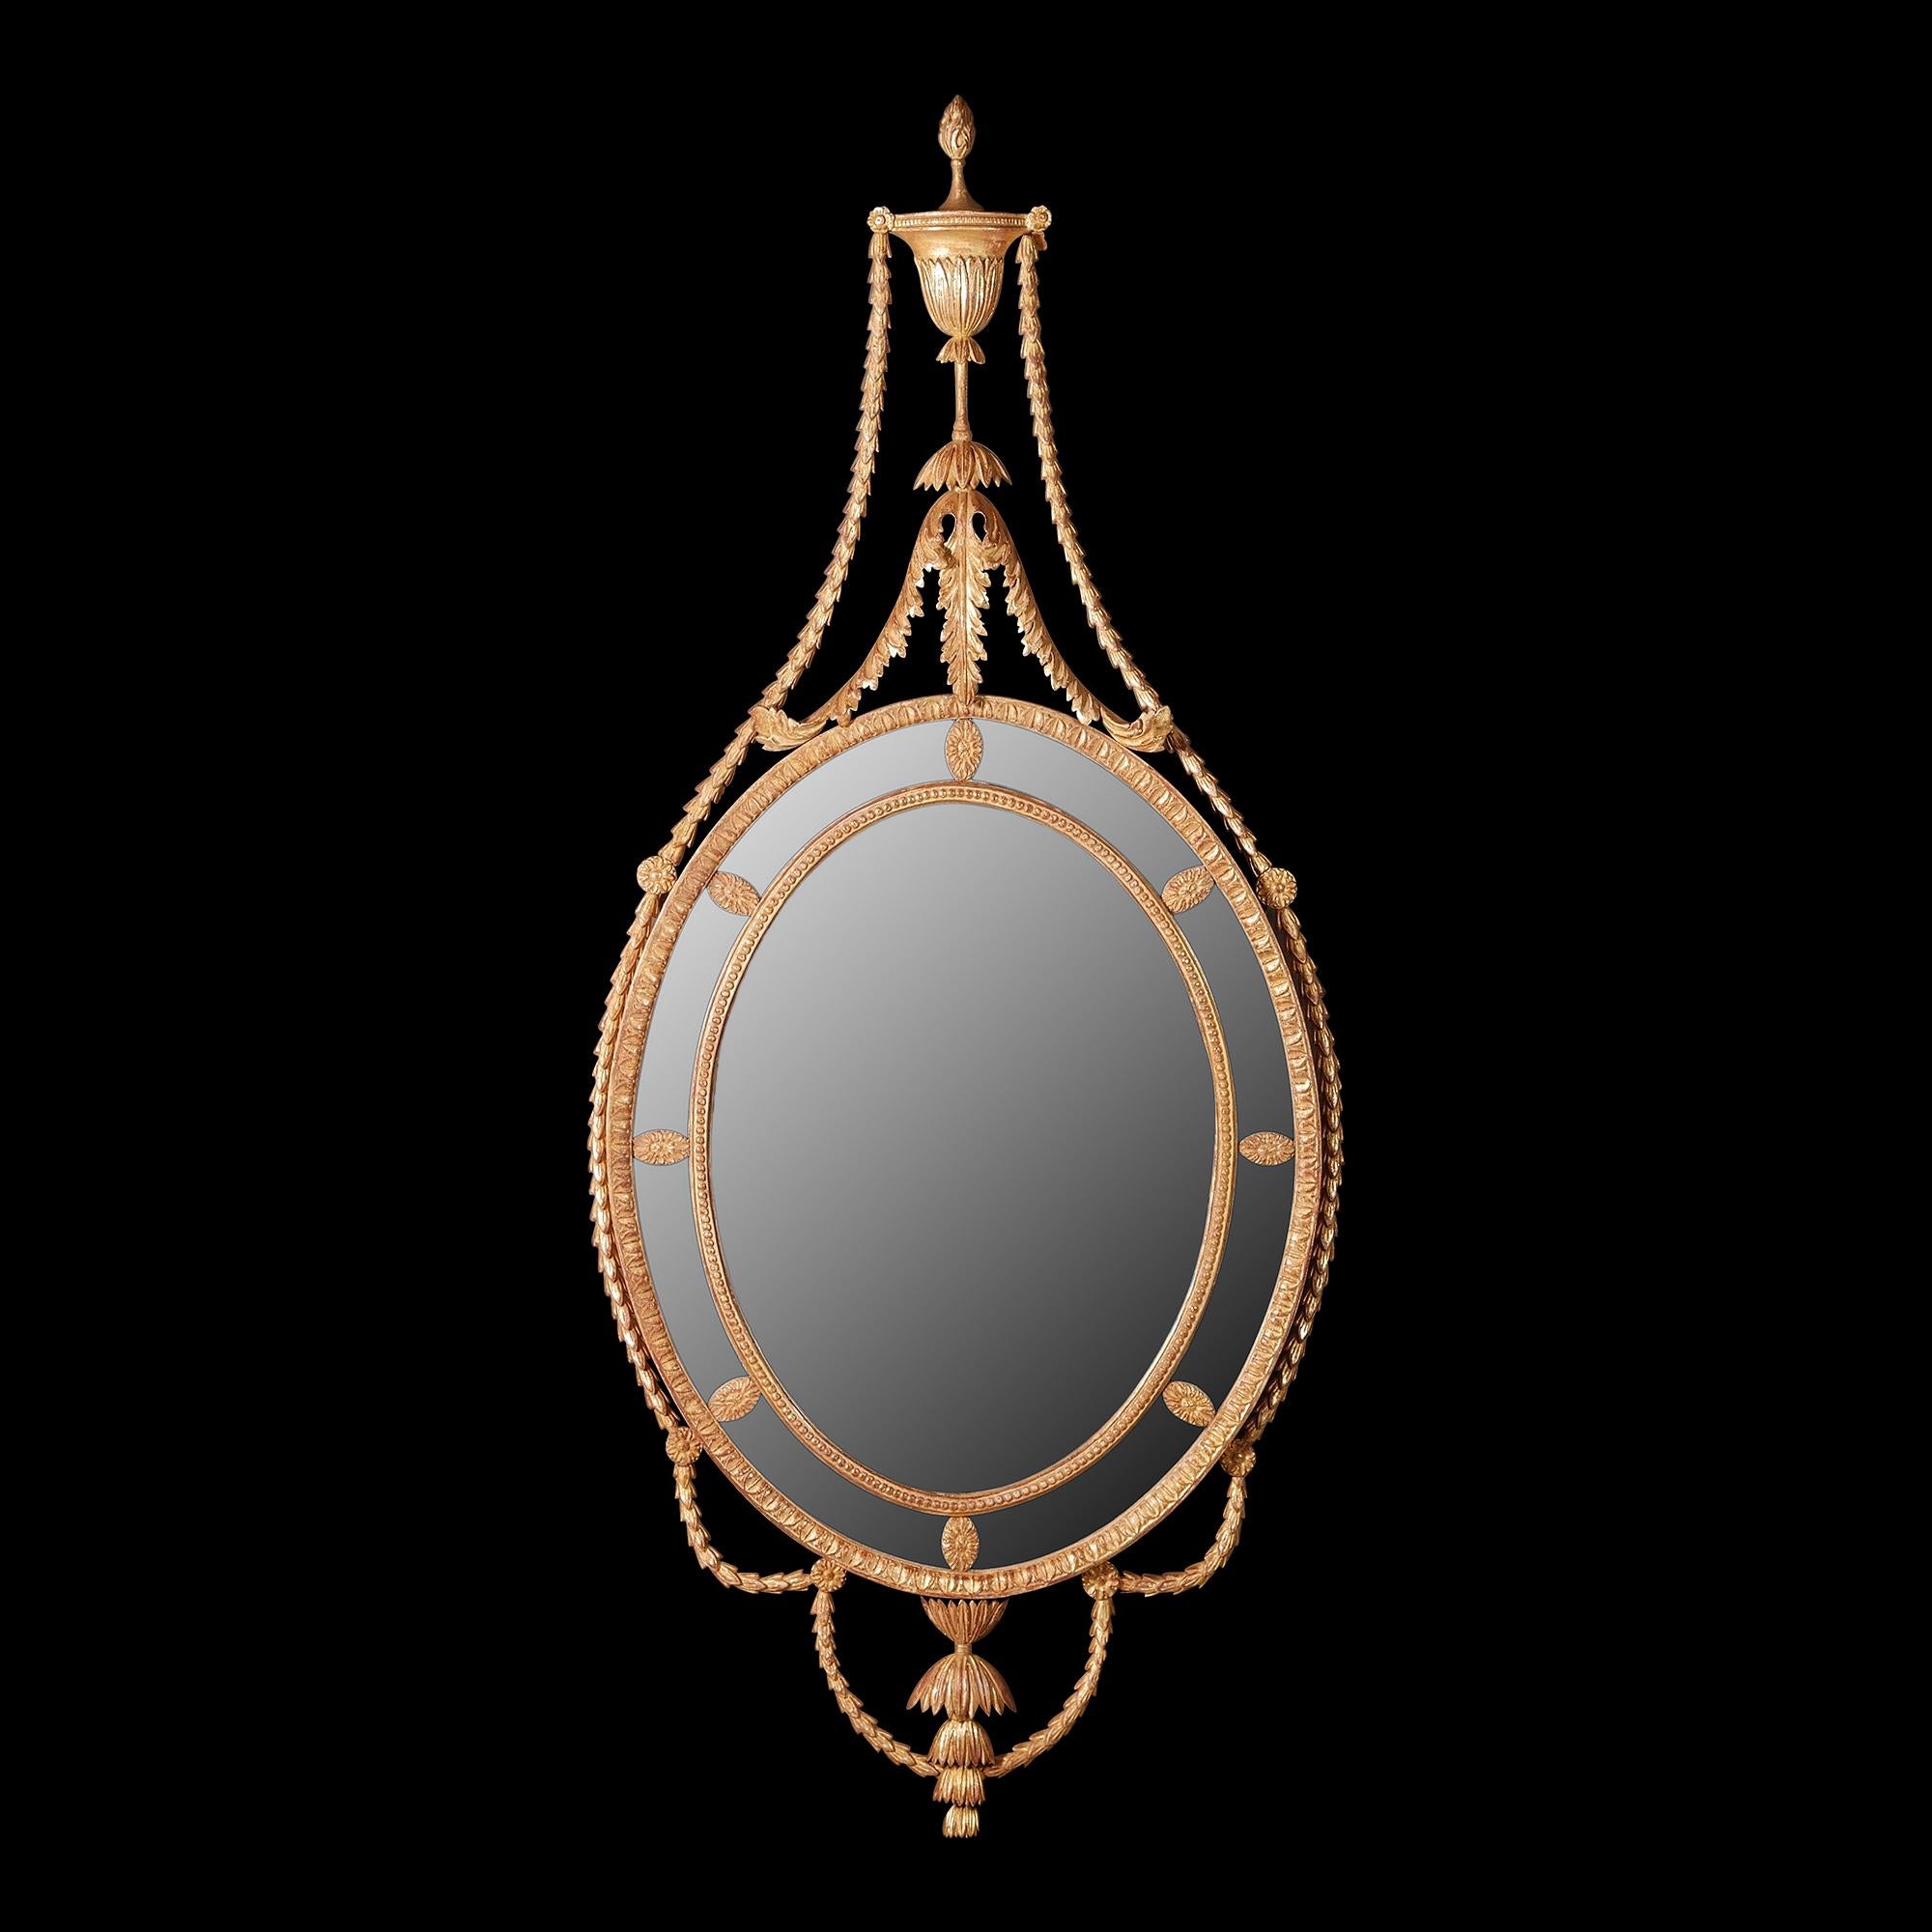 Ein geschnitzter ovaler Spiegel im Adams-Design mit blattgeschnitztem Außenrahmen und perlengeschnitztem Innenrahmen, die umlaufenden Randgläser sind mit ovalen Blumenkopfpaternen durchsetzt. Die Scheitelform einer klassischen Urne. Die Flamme wird